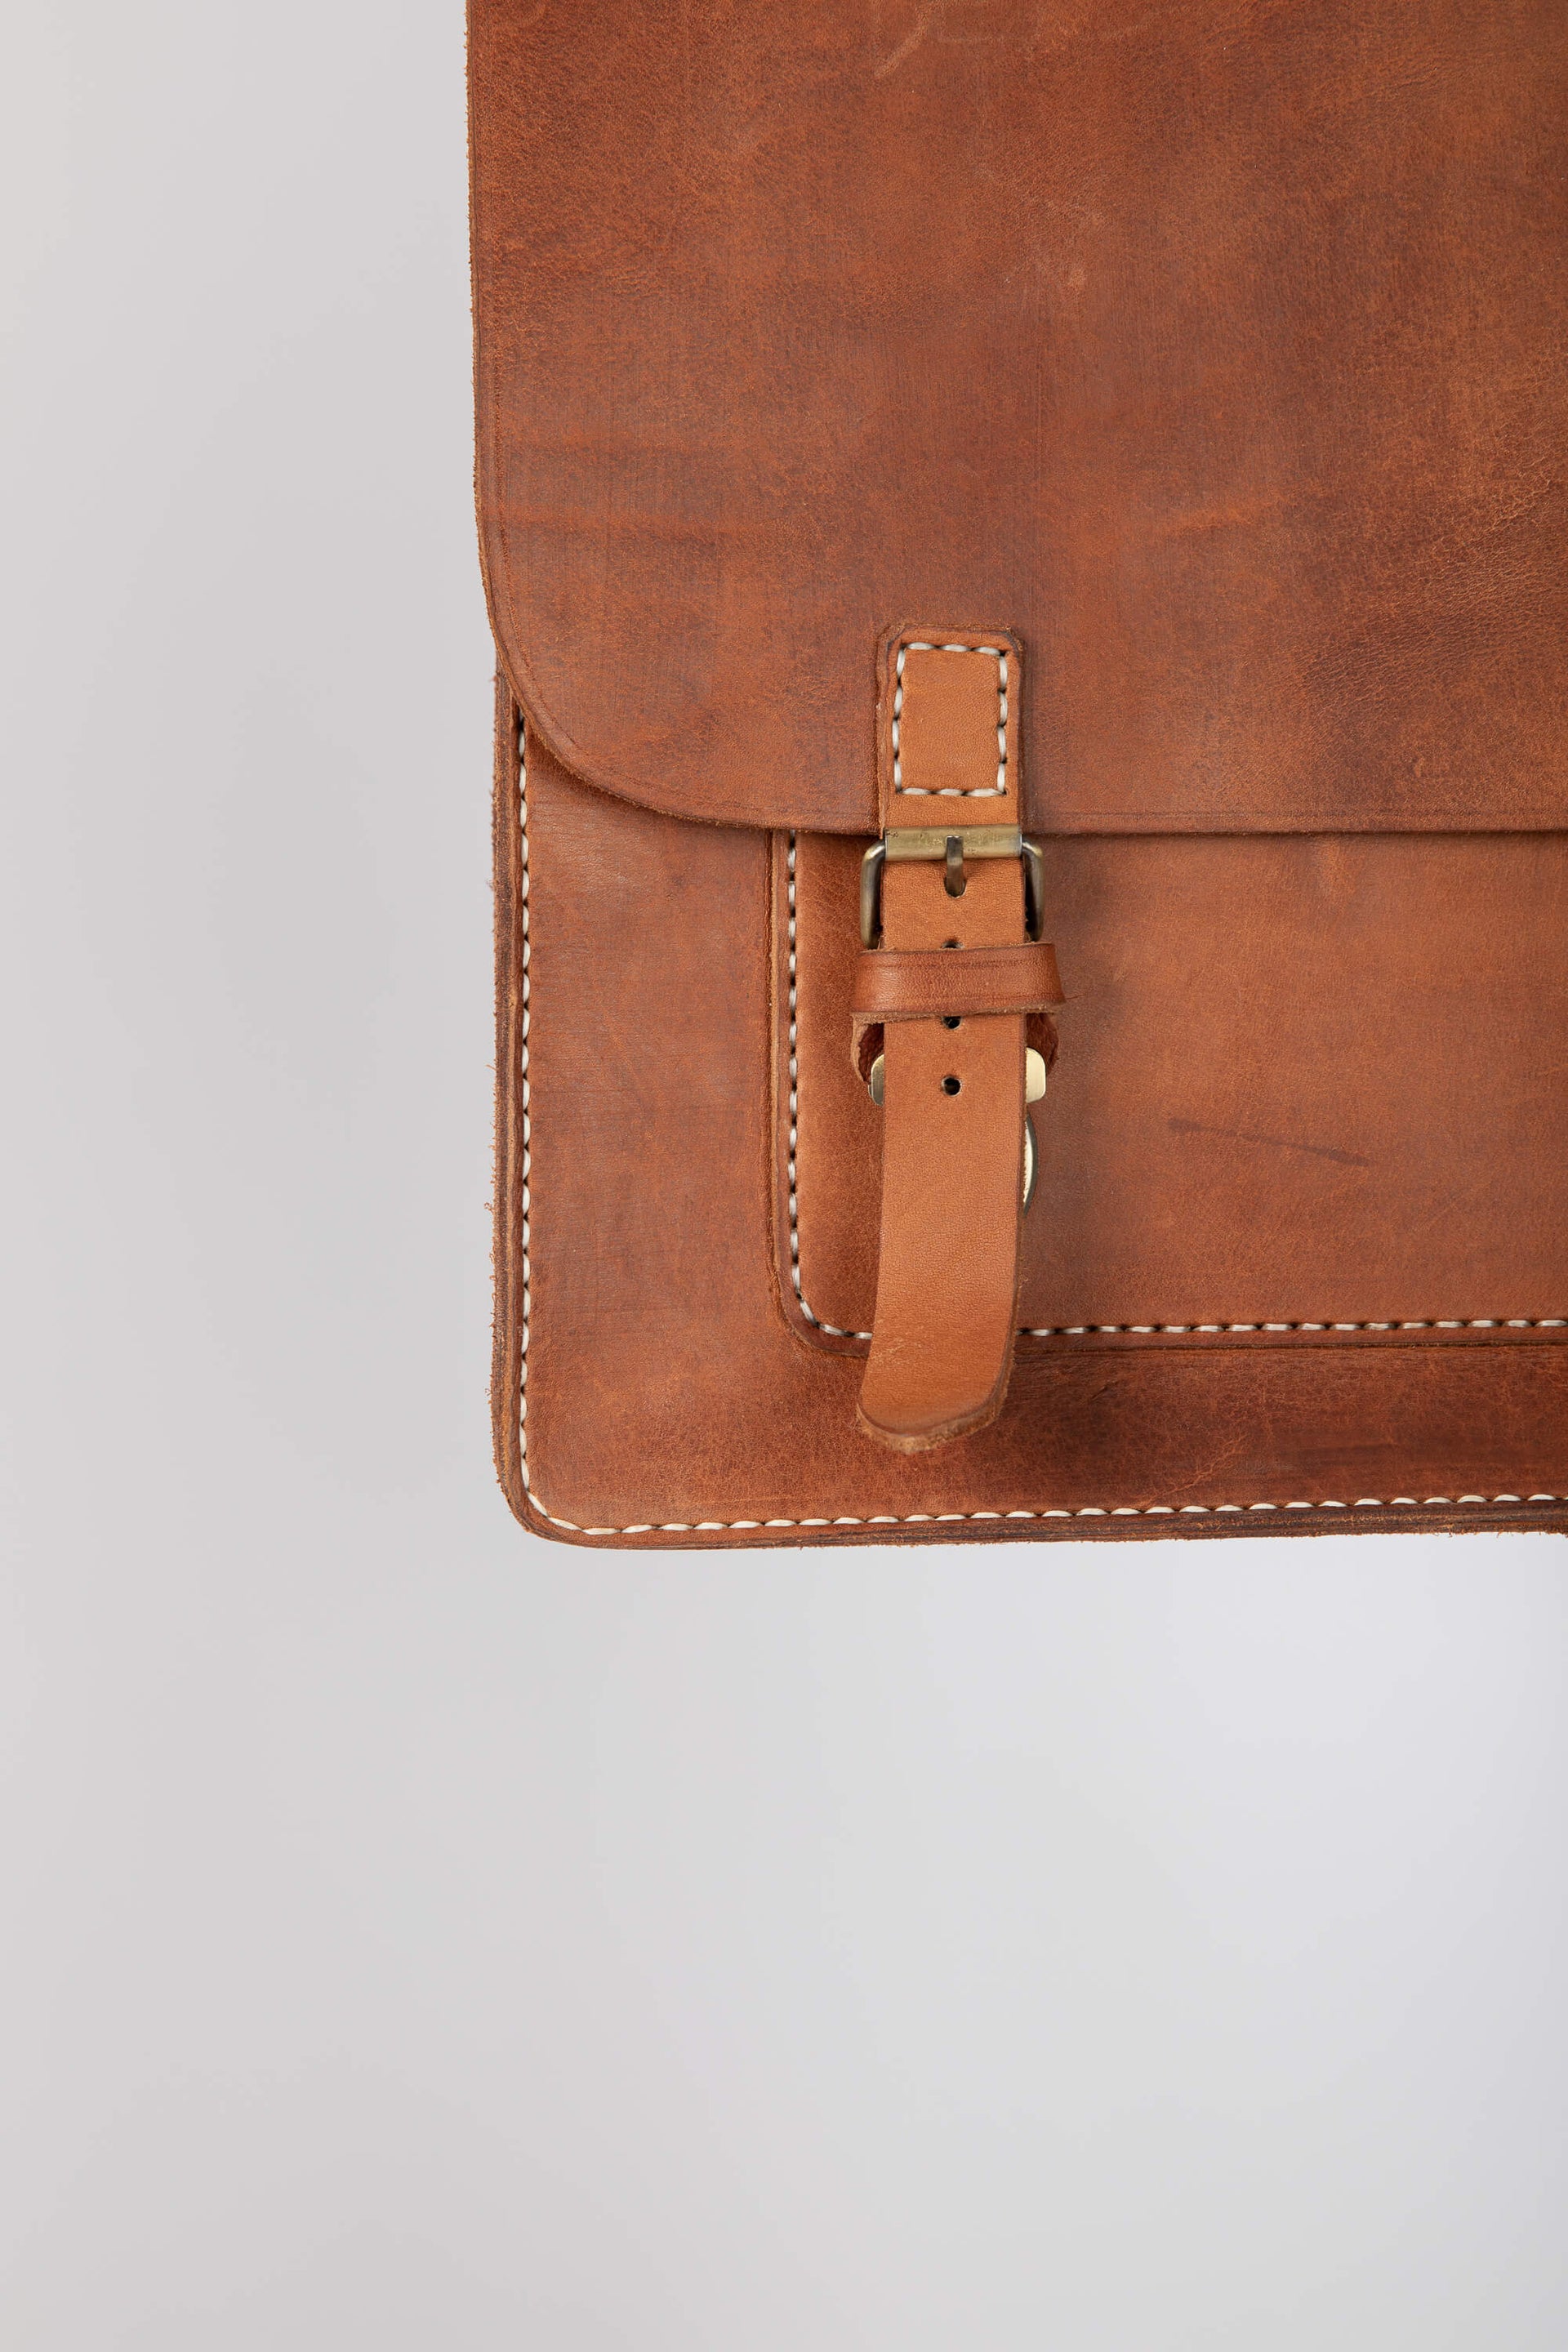 Leather Messenger Bag 13" Chestnut